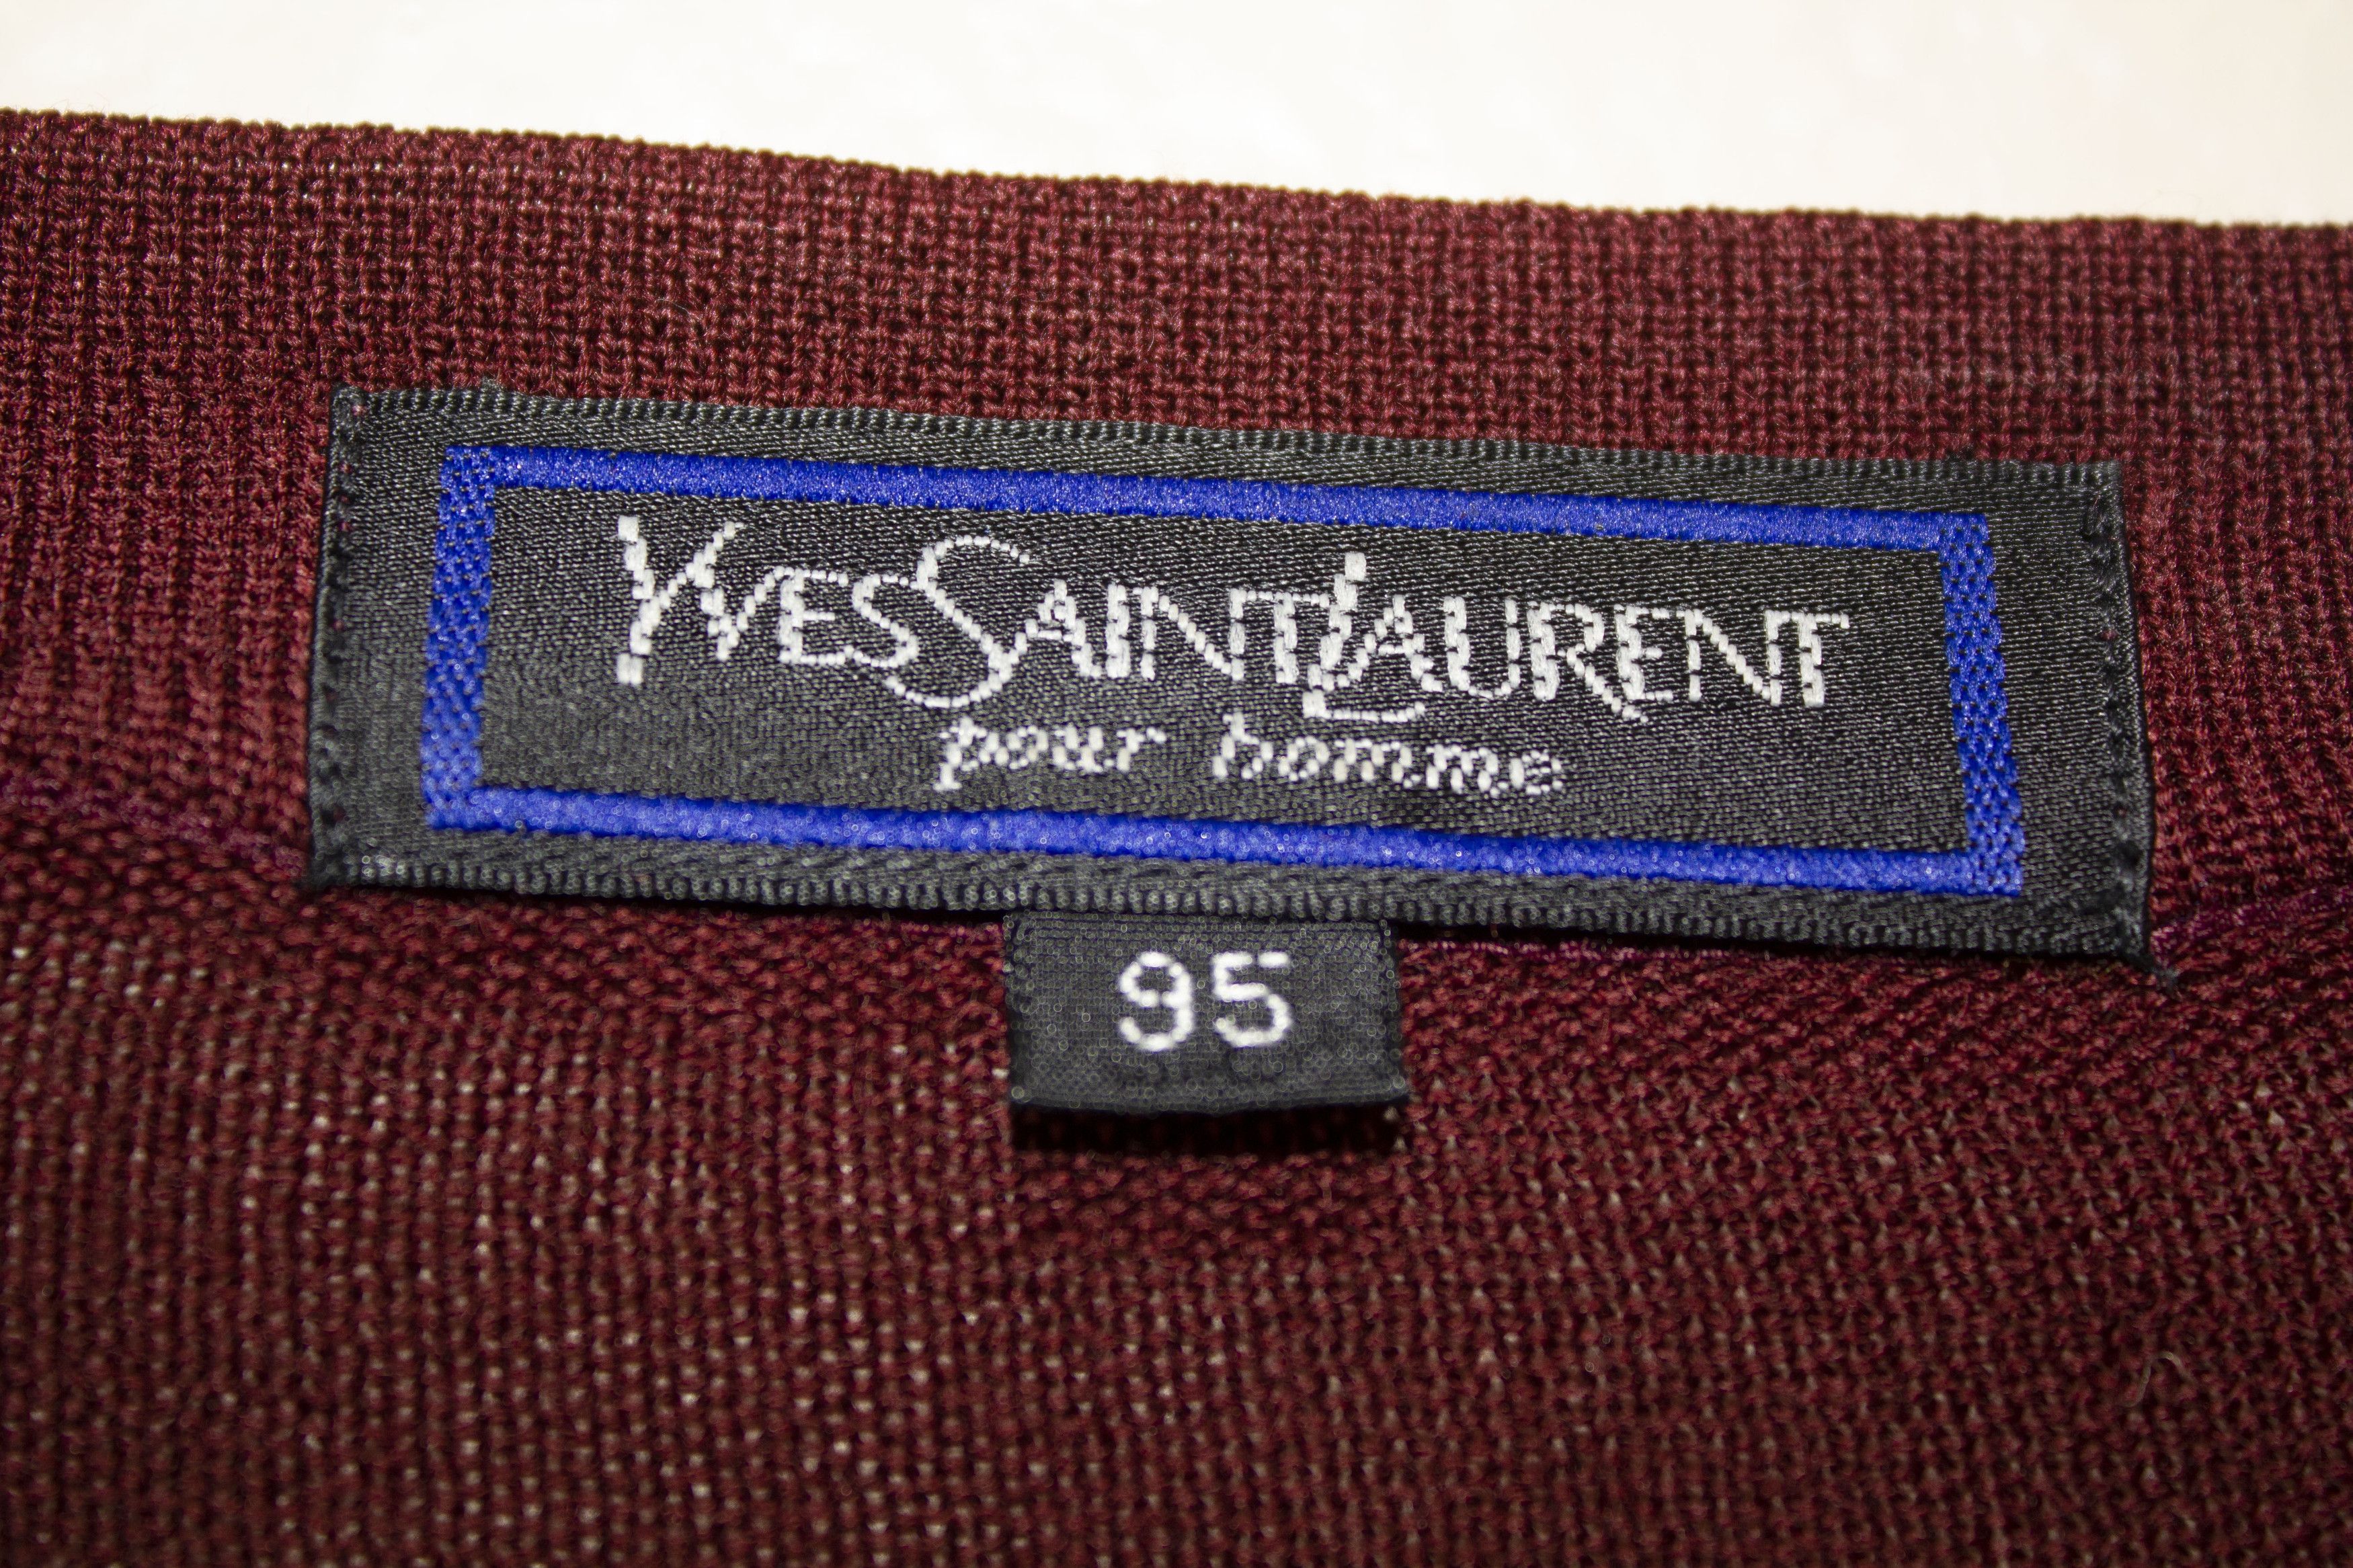 Yves Saint Laurent Yves Saint Laurent Vintage Cardigan Size US M / EU 48-50 / 2 - 5 Thumbnail